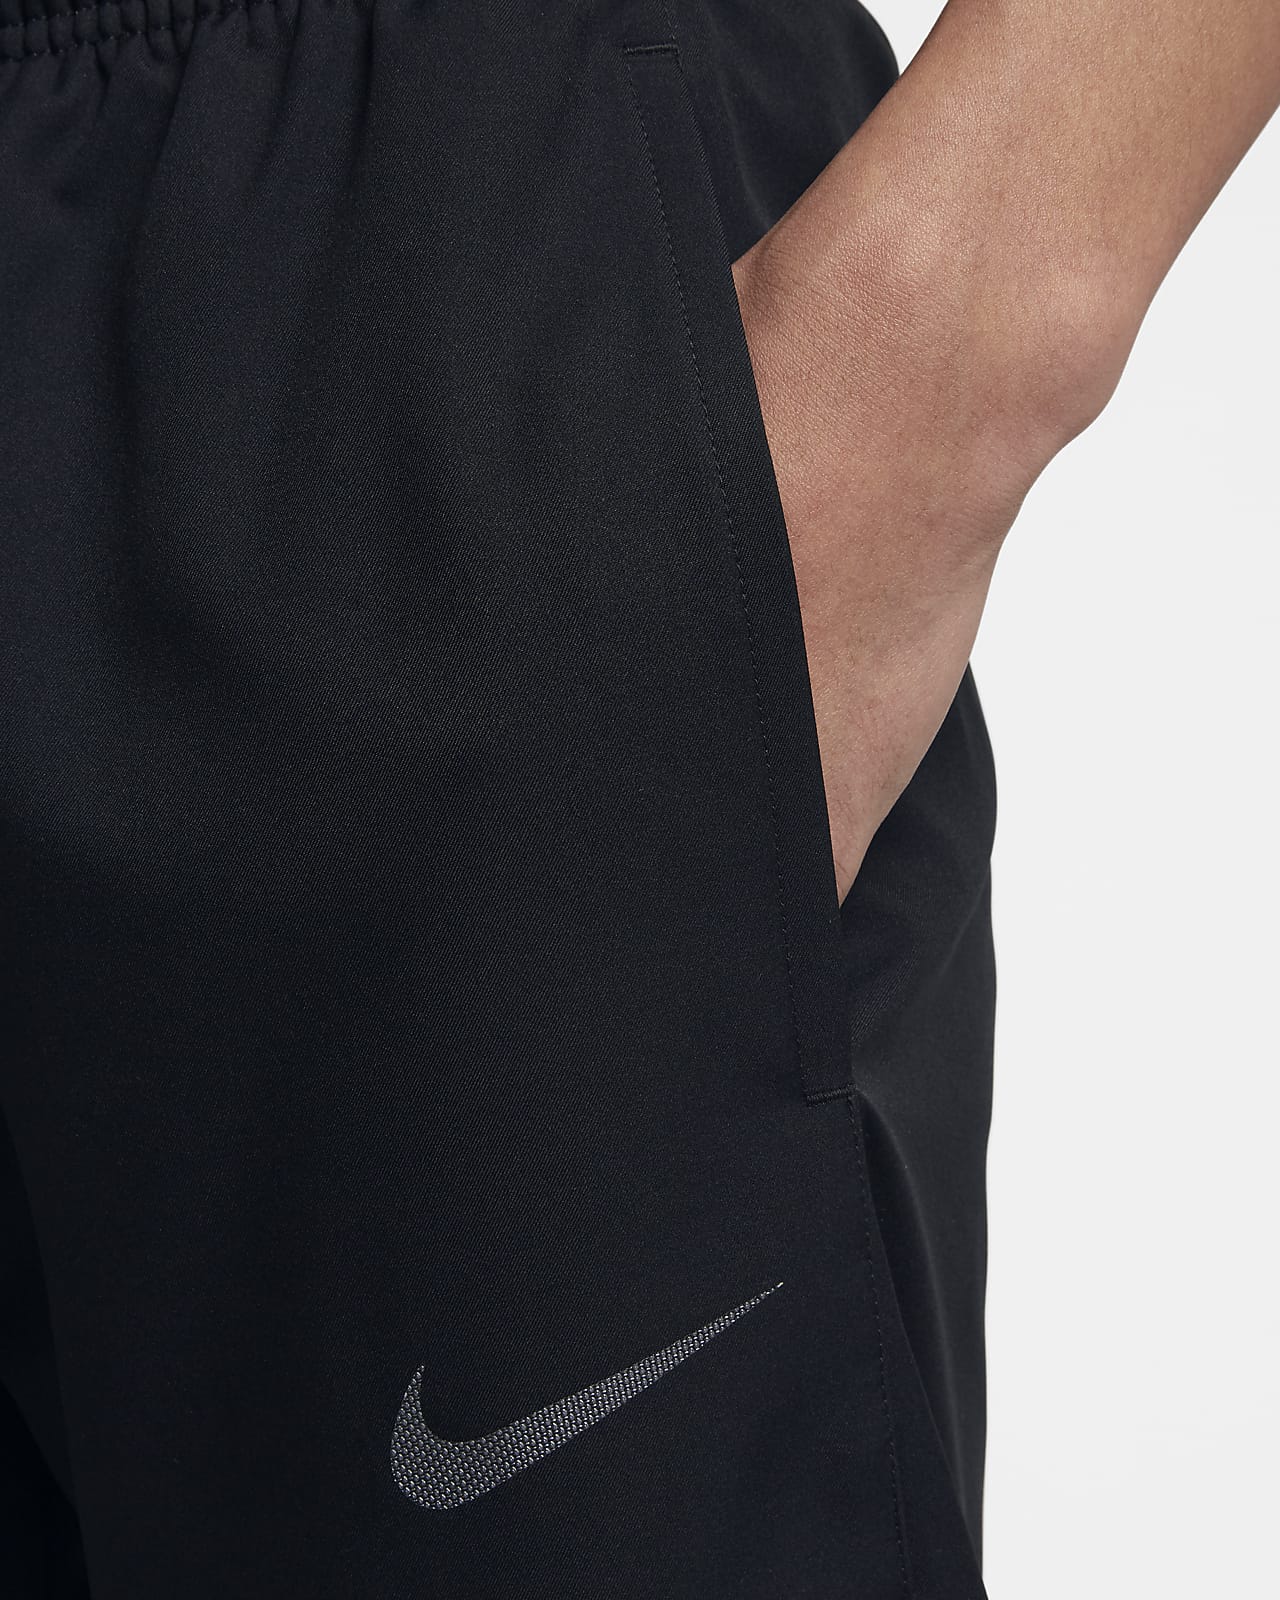 Nike Dri-FIT Men's Training Trousers 